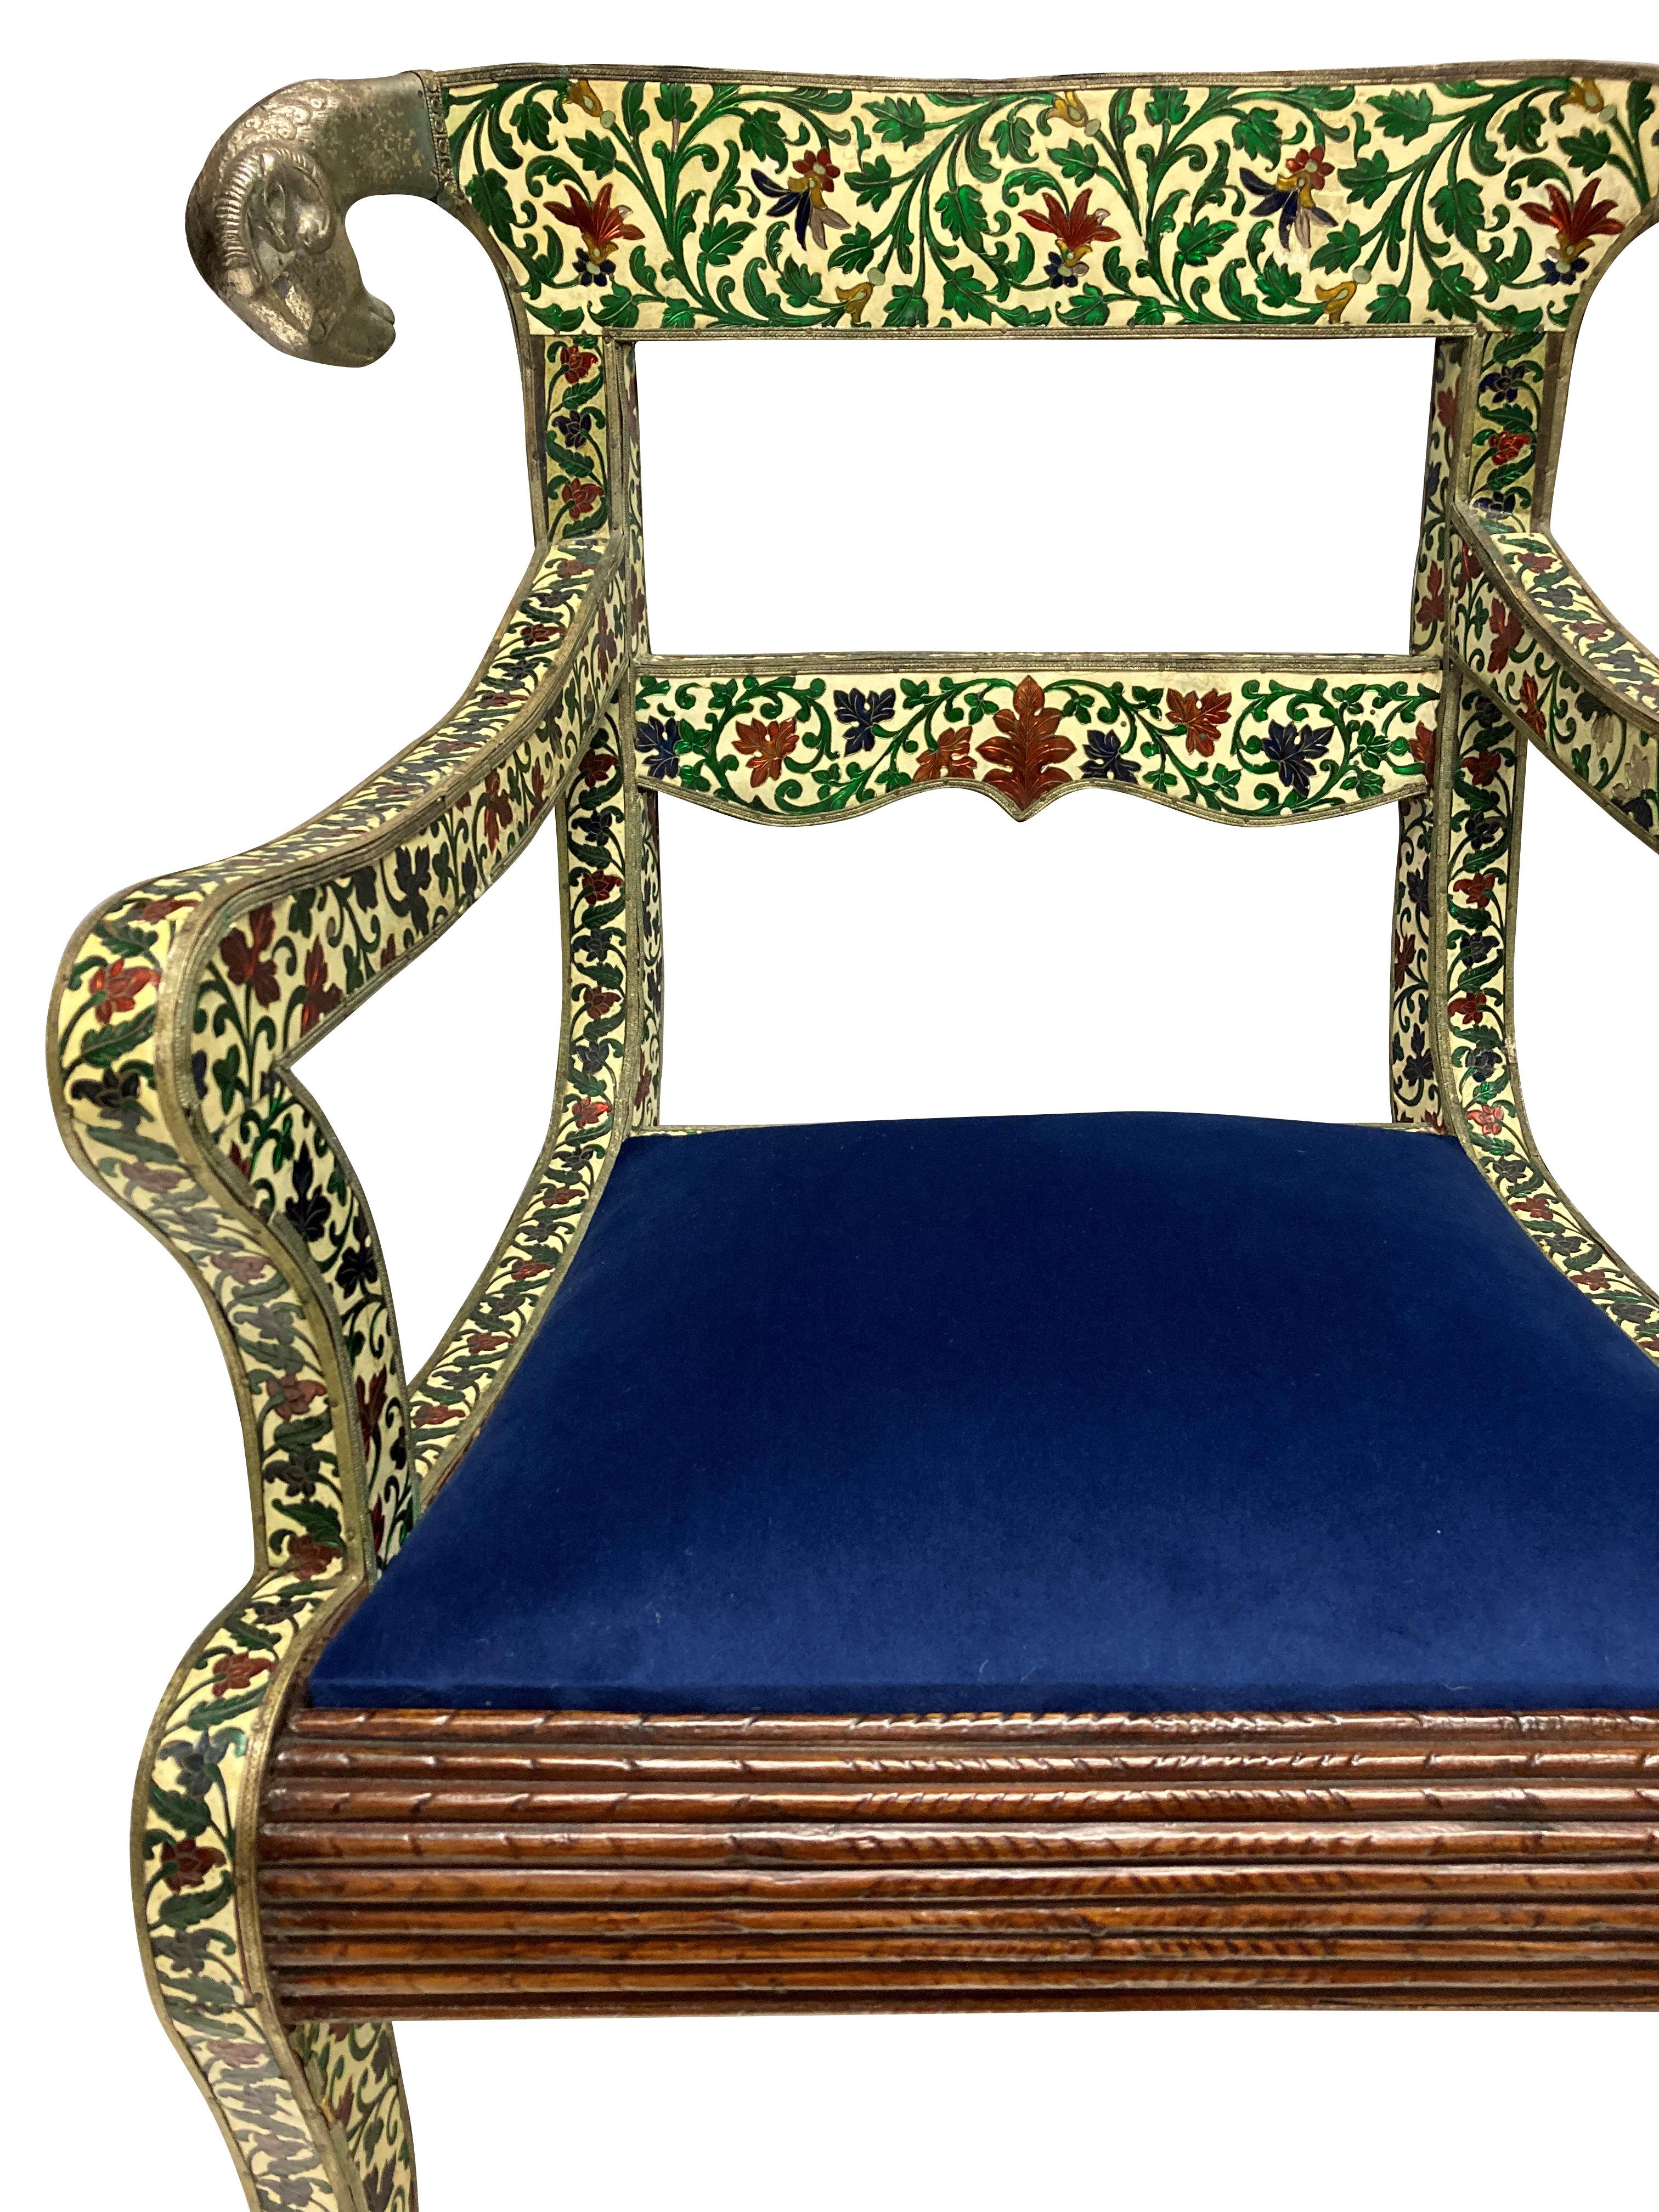 Rare paire de fauteuils en cloisonné indien et en argent de style Regency. En bois dur et recouvert d'un émail magnifiquement décoré de fleurs et de feuillages, avec une décoration en argent repoussé. Les sièges d'origine étaient en velours violet